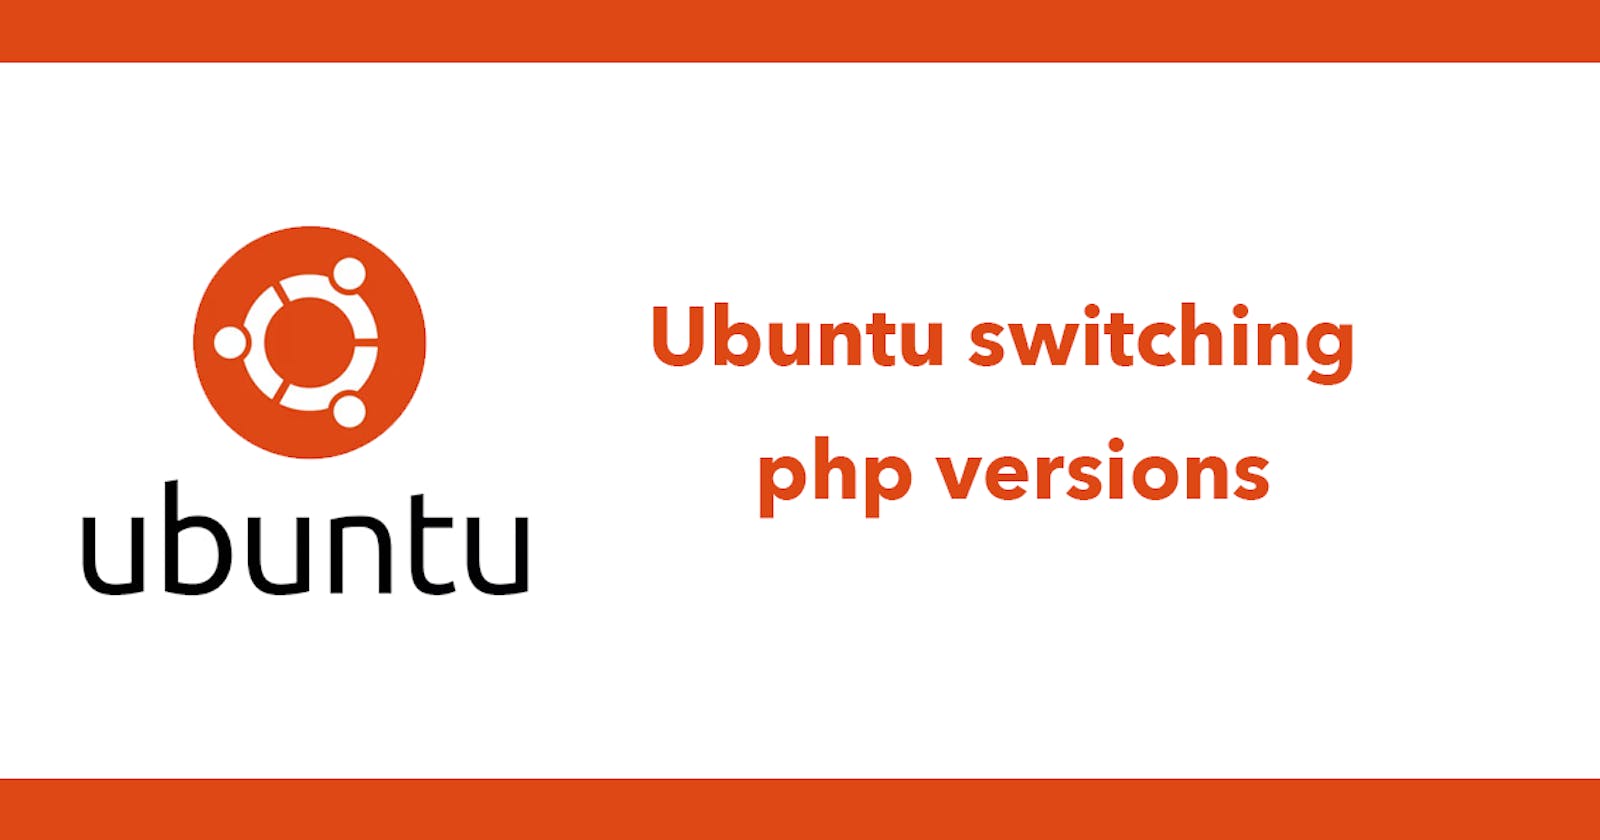 Ubuntu switching php versions